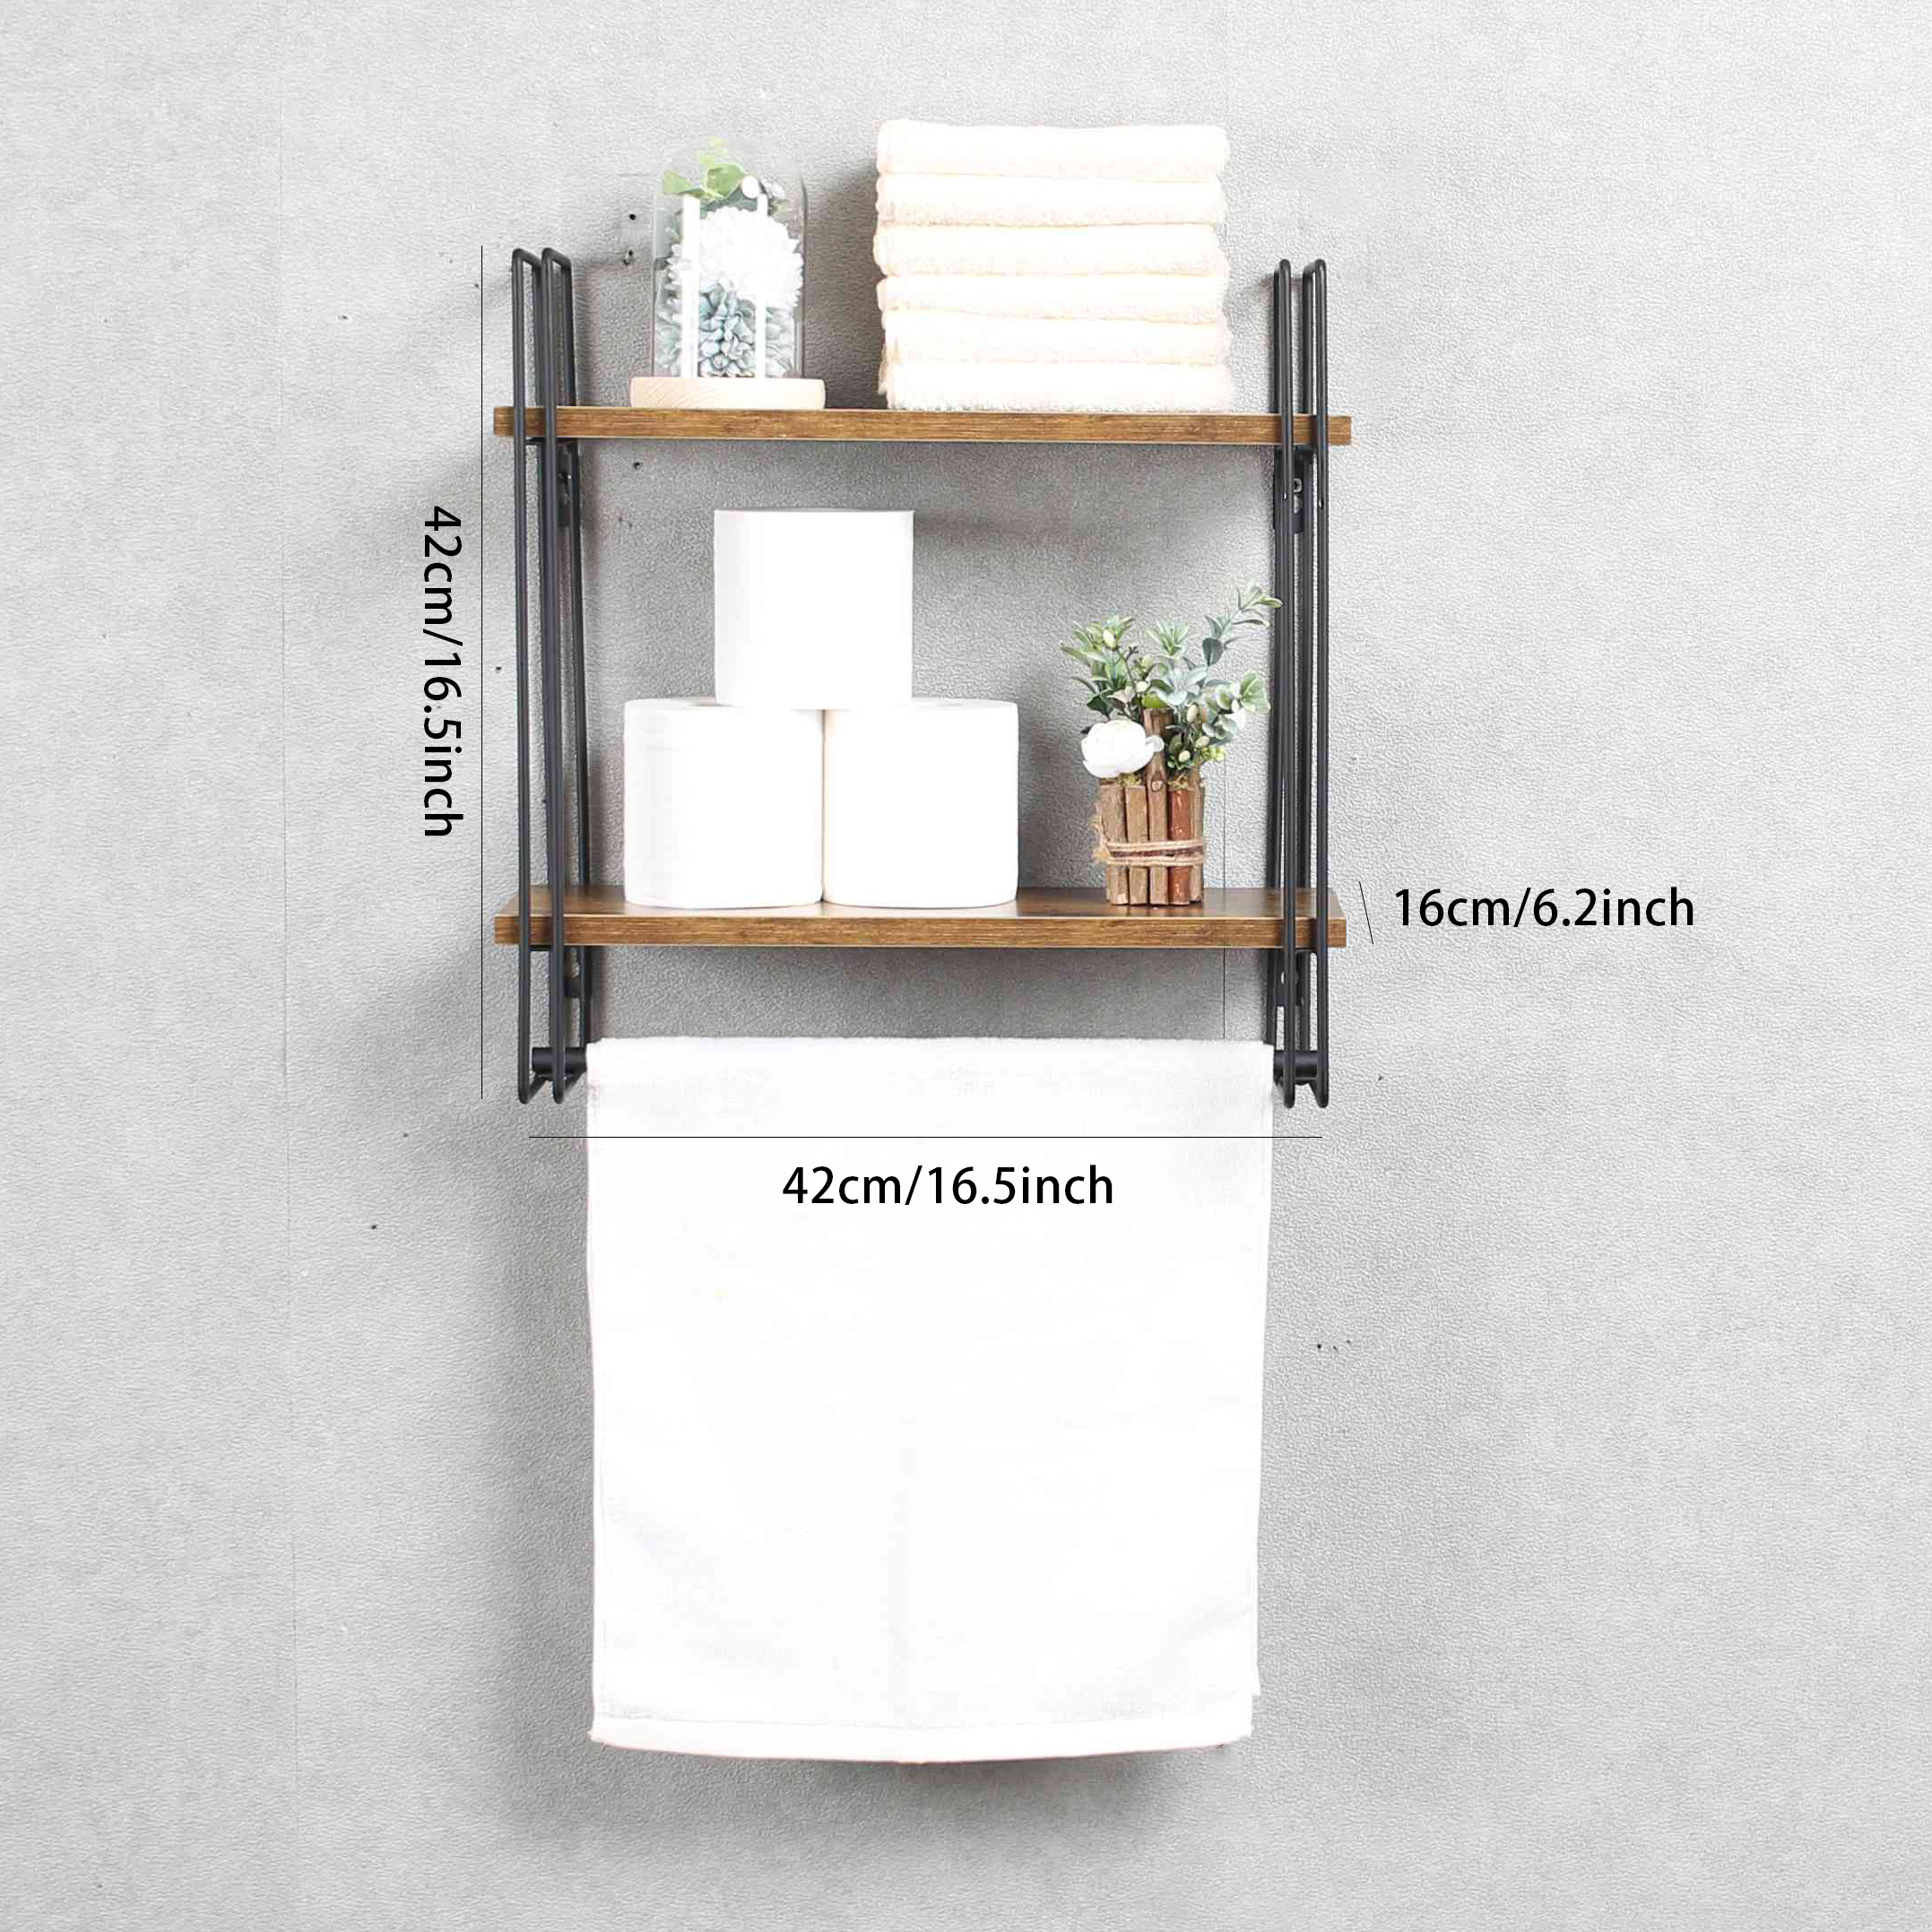 2 Tier Wall Mounted Bathroom Organizer Wood Wall Shelf w/Towel Bar